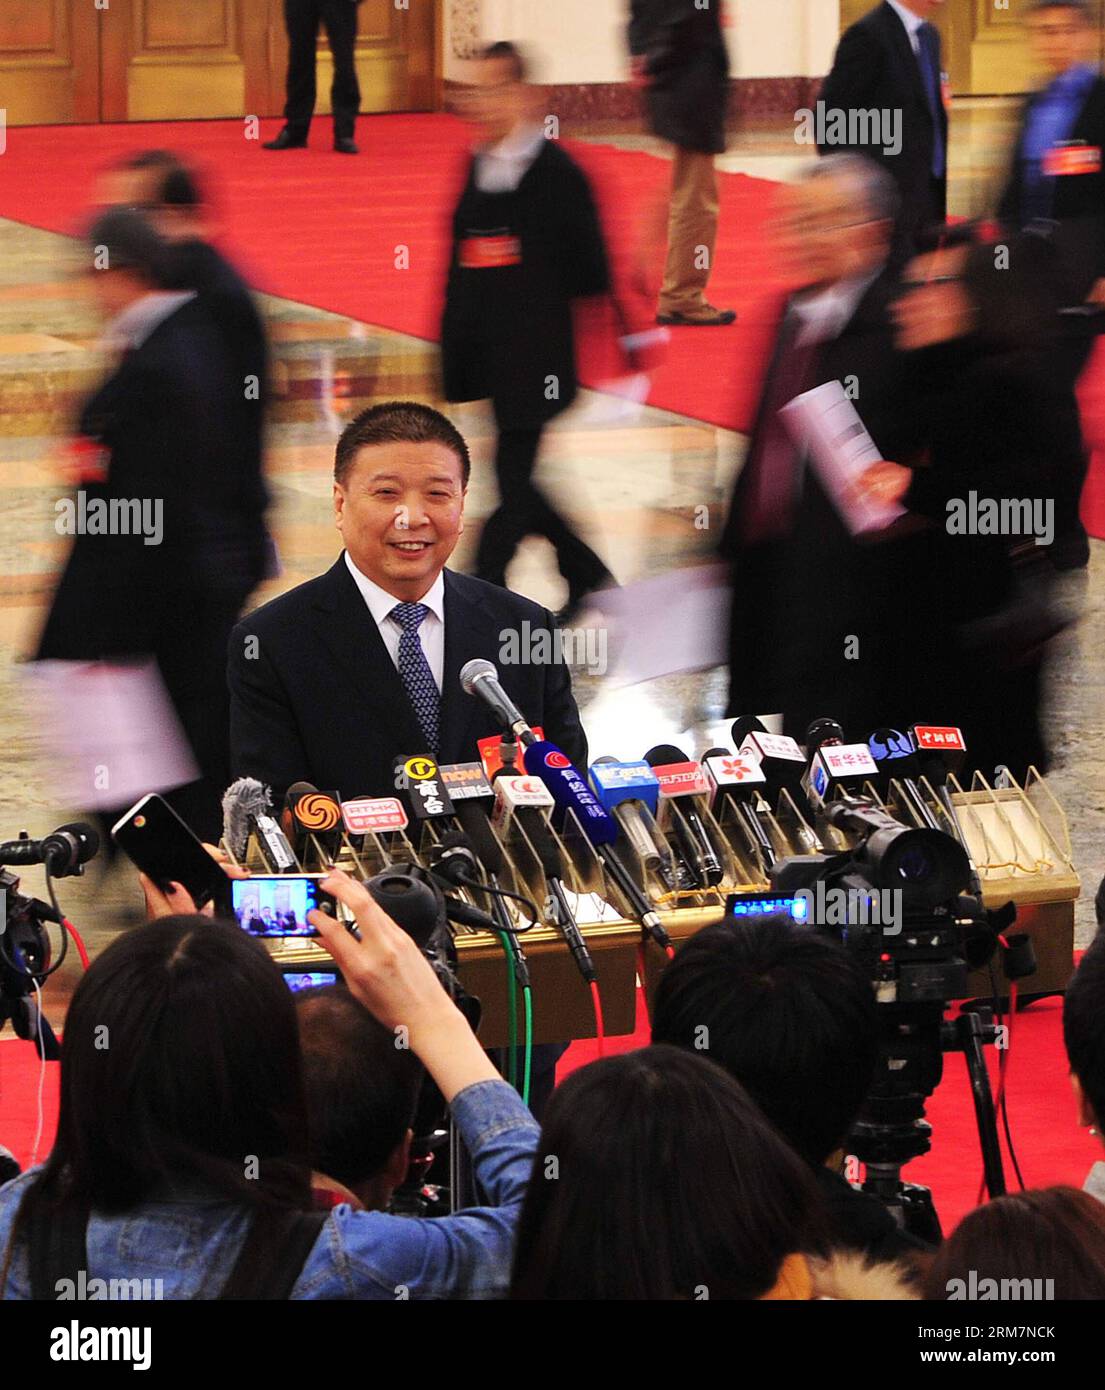 (140310) -- PECHINO, 10 marzo 2014 (Xinhua) -- il ministro cinese della terra e delle risorse Jiang Daming riceve un'intervista presso la grande sala del popolo a Pechino, capitale della Cina, 10 marzo 2014. Jiang ha detto che il ministero dei terreni e delle risorse (MLR) e il ministero degli alloggi e dello sviluppo urbano-rurale (MOHURD) avrebbero congiuntamente represso la costruzione e le vendite di alloggi con diritti di proprietà limitati. (Xinhua/Xiao Yijiu) (zkr) (DUE SESSIONI) CINA-PECHINO-INTERVISTA-JIANG DAMING-LIMITED PROPERTY RIGHTS (CN) PUBLICATIONxNOTxINxCHN Pechino 10 marzo 2014 XINHUA Chinese Minister of Country and Resourc Foto Stock